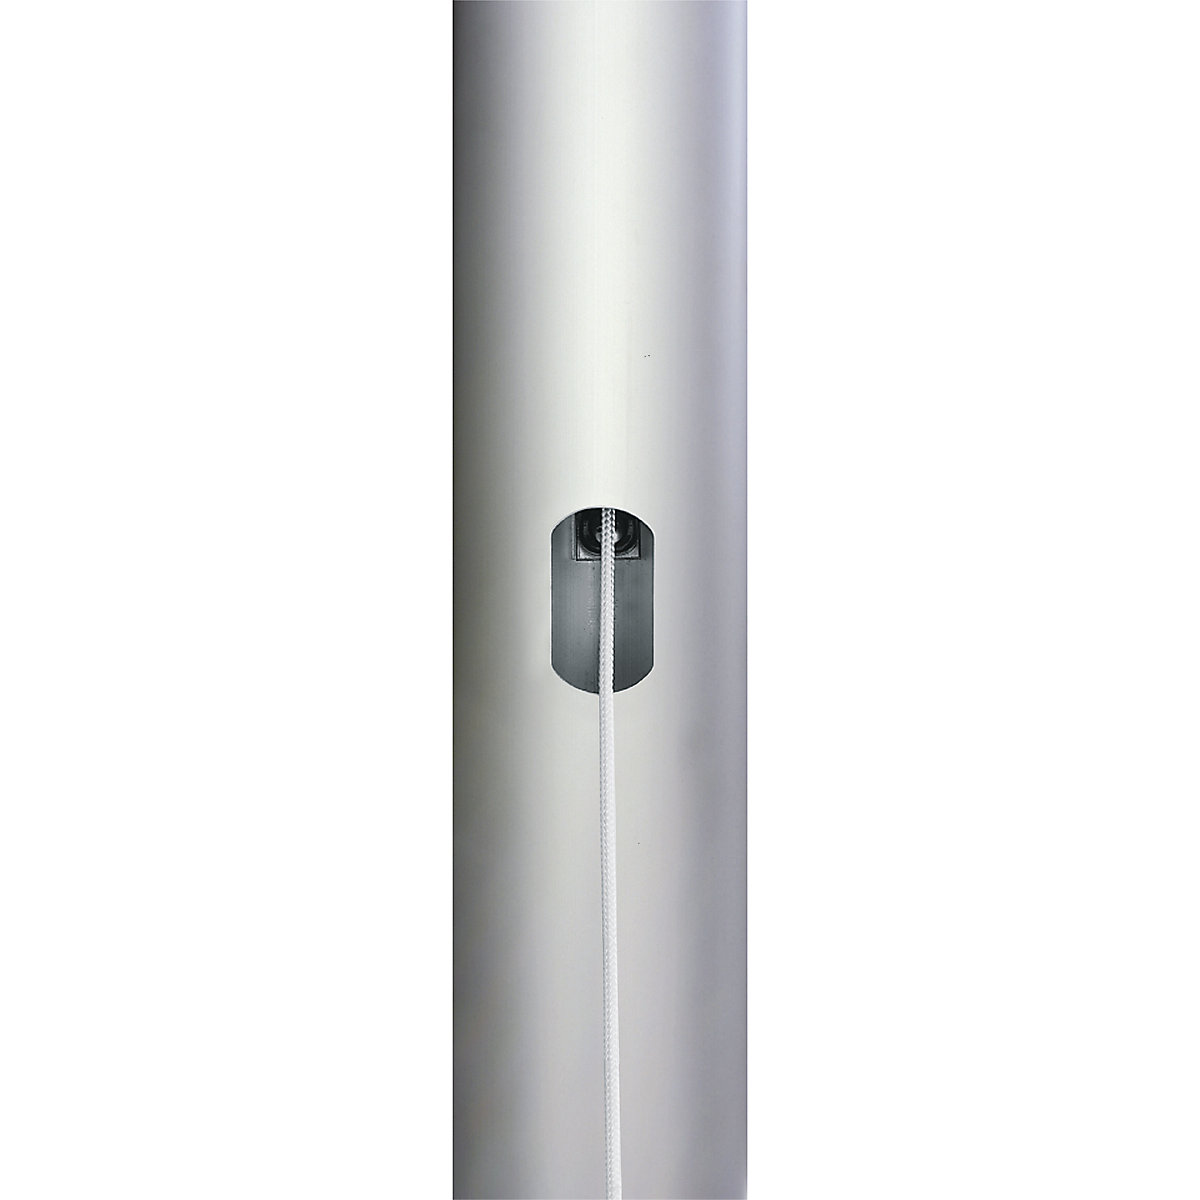 Mannus – PIRAT aluminium flag pole (Product illustration 8)